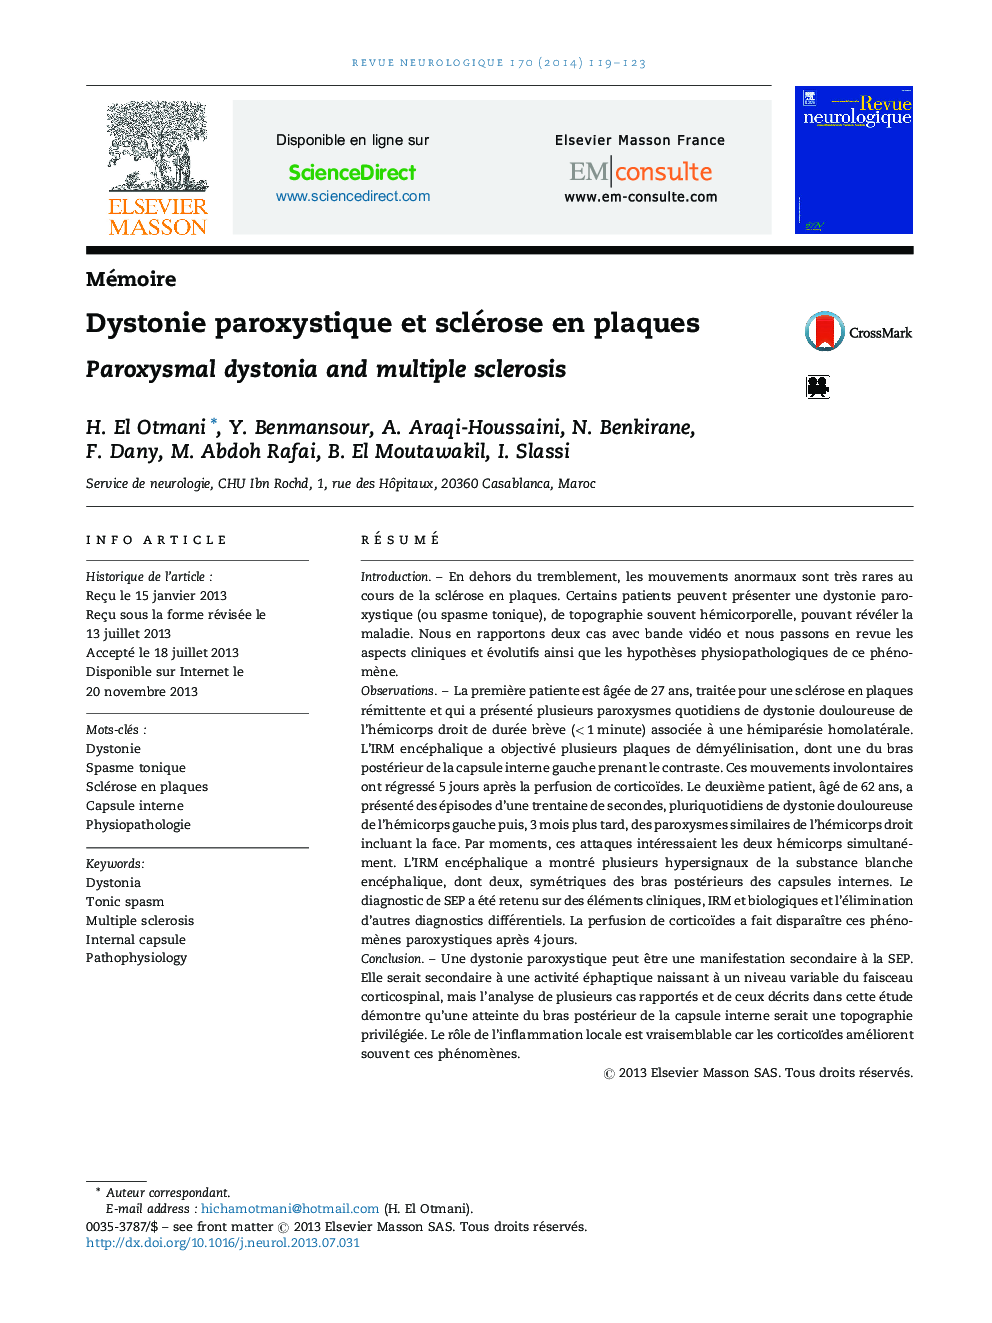 Dystonie paroxystique et sclérose en plaques